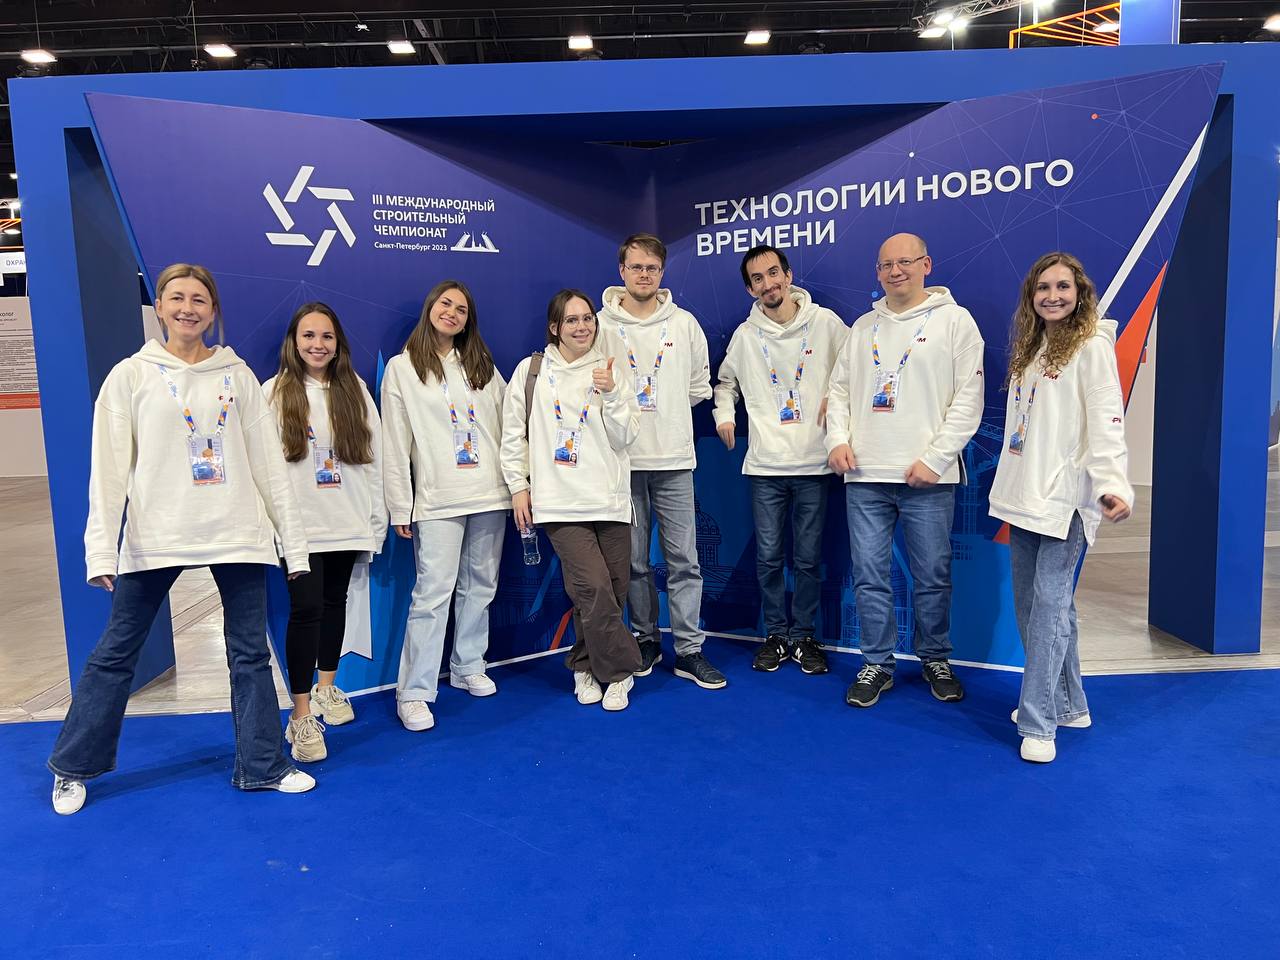 ГК ПМСОФТ приняла участие в III Международном строительном чемпионате